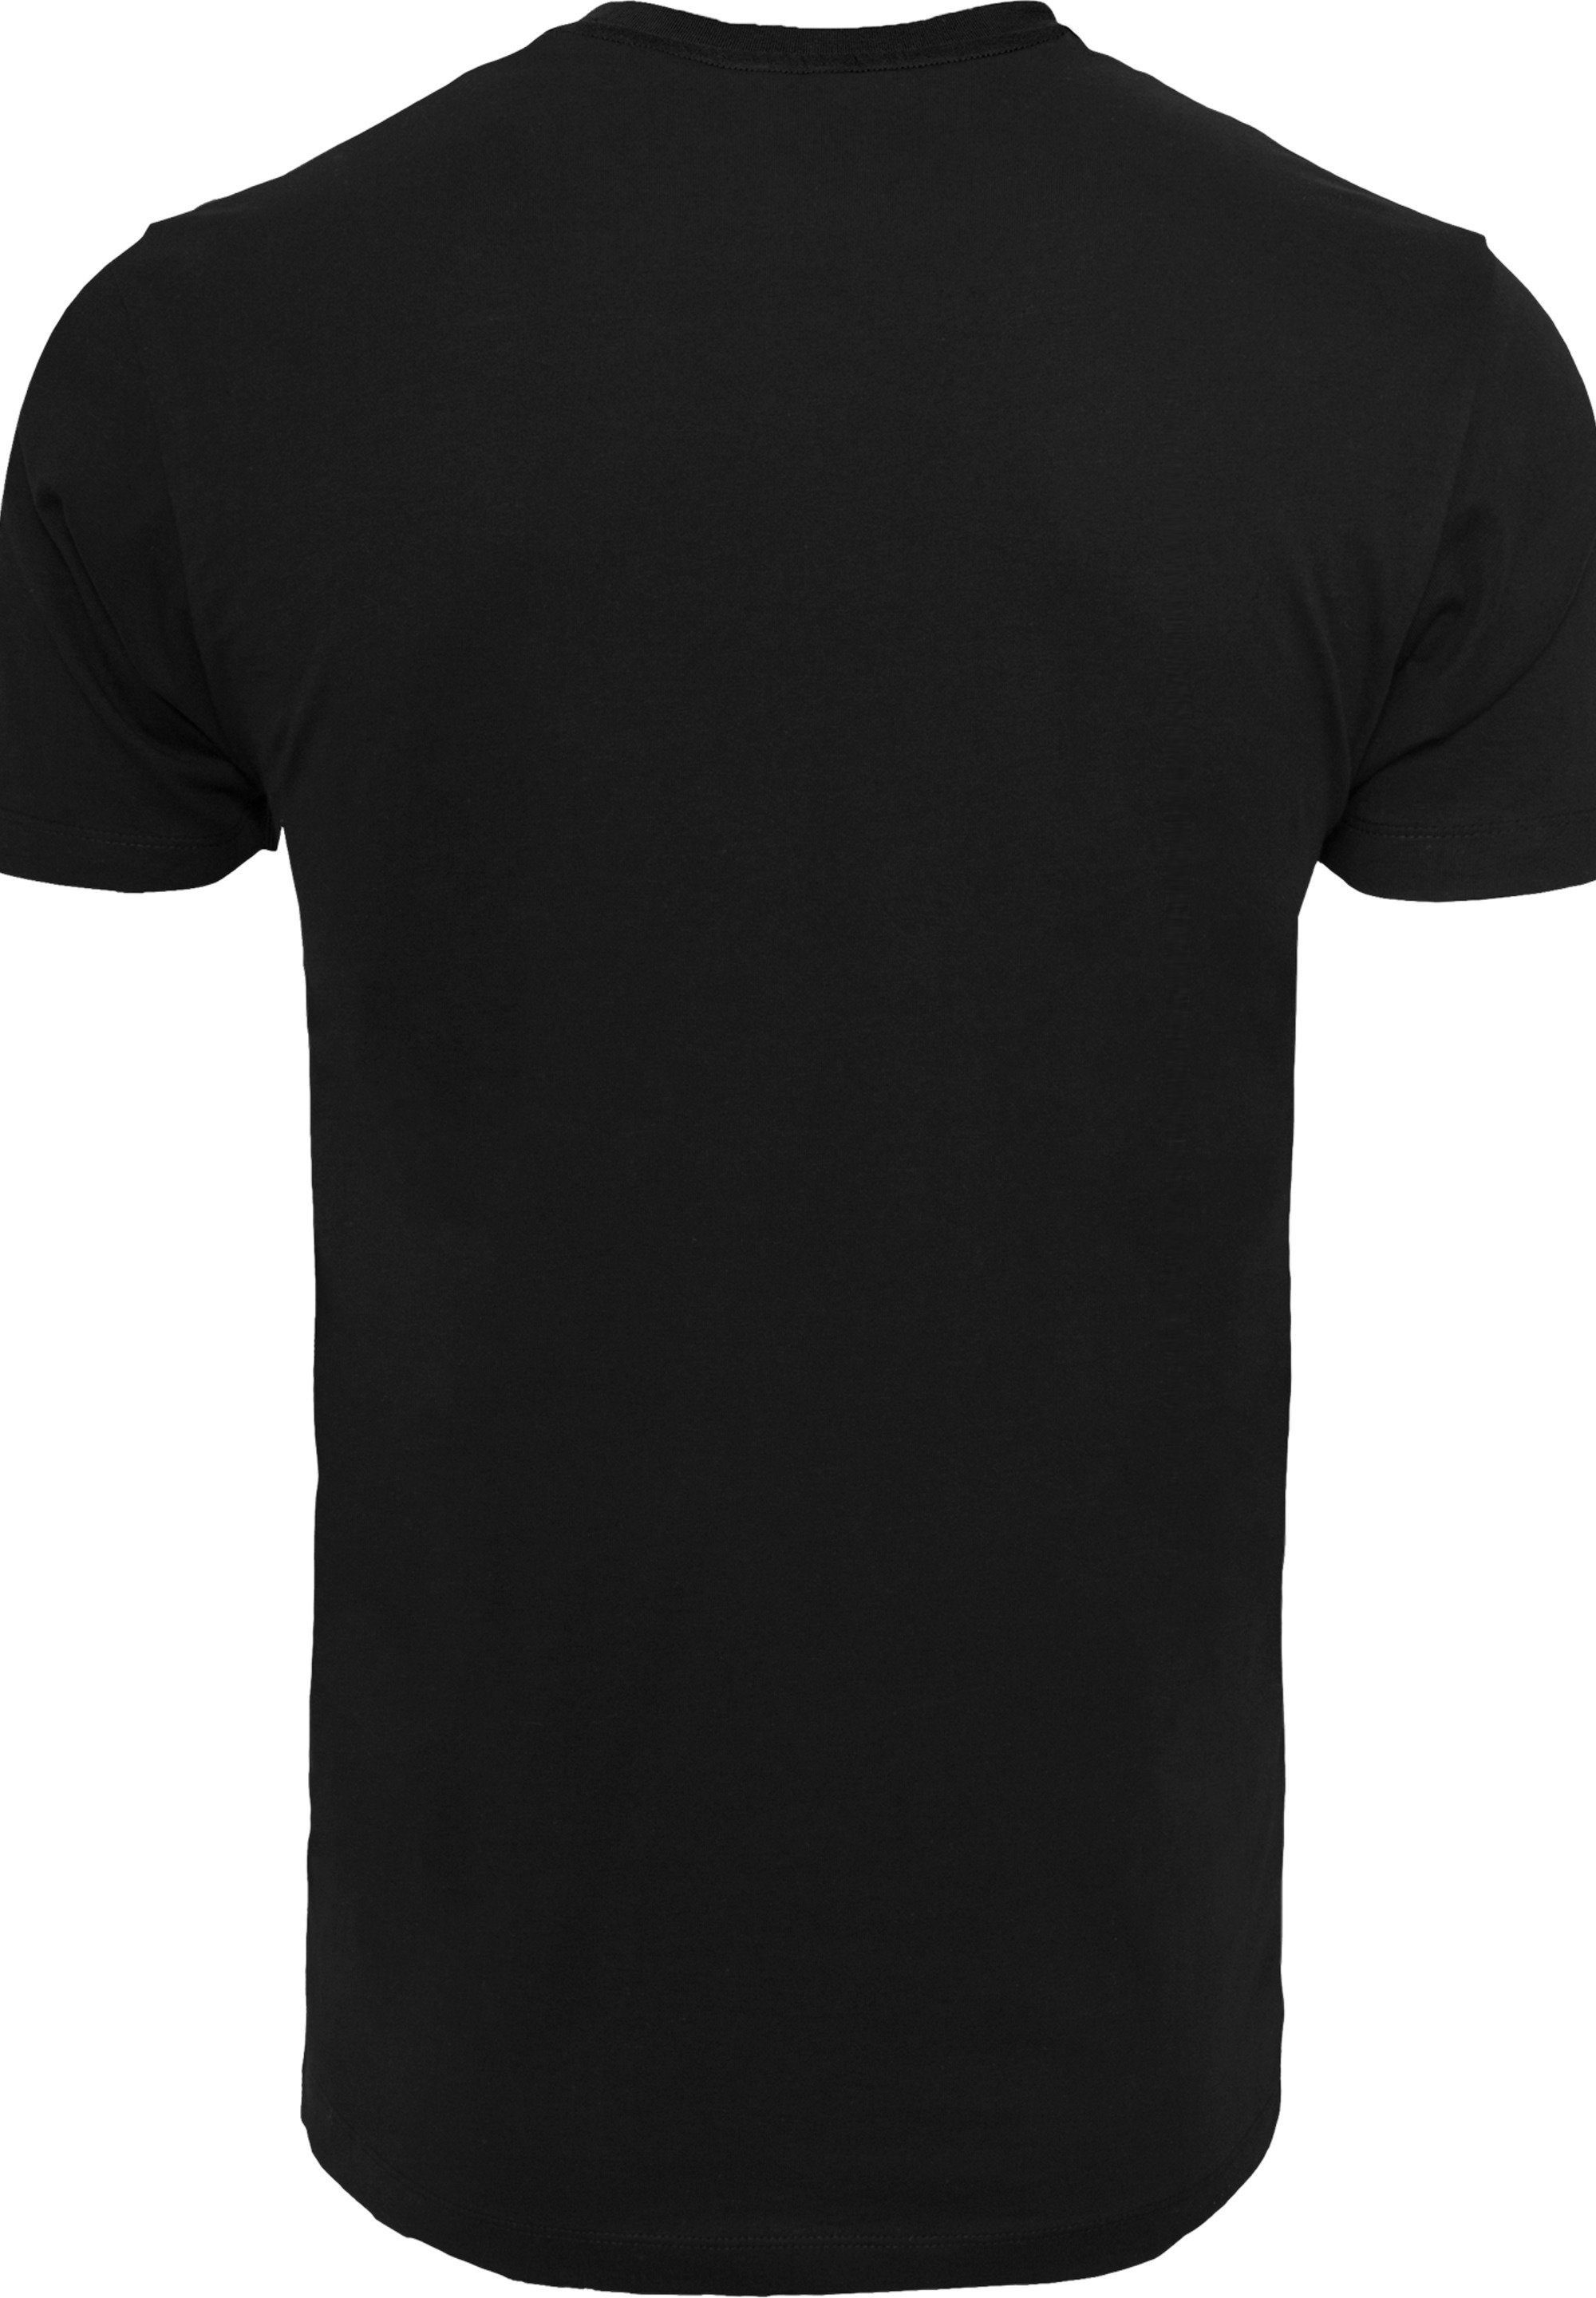 Logo T-Shirt Herren,Premium F4NT4STIC Spot Merch,Regular-Fit,Basic,Bedruckt DC Comics Superman